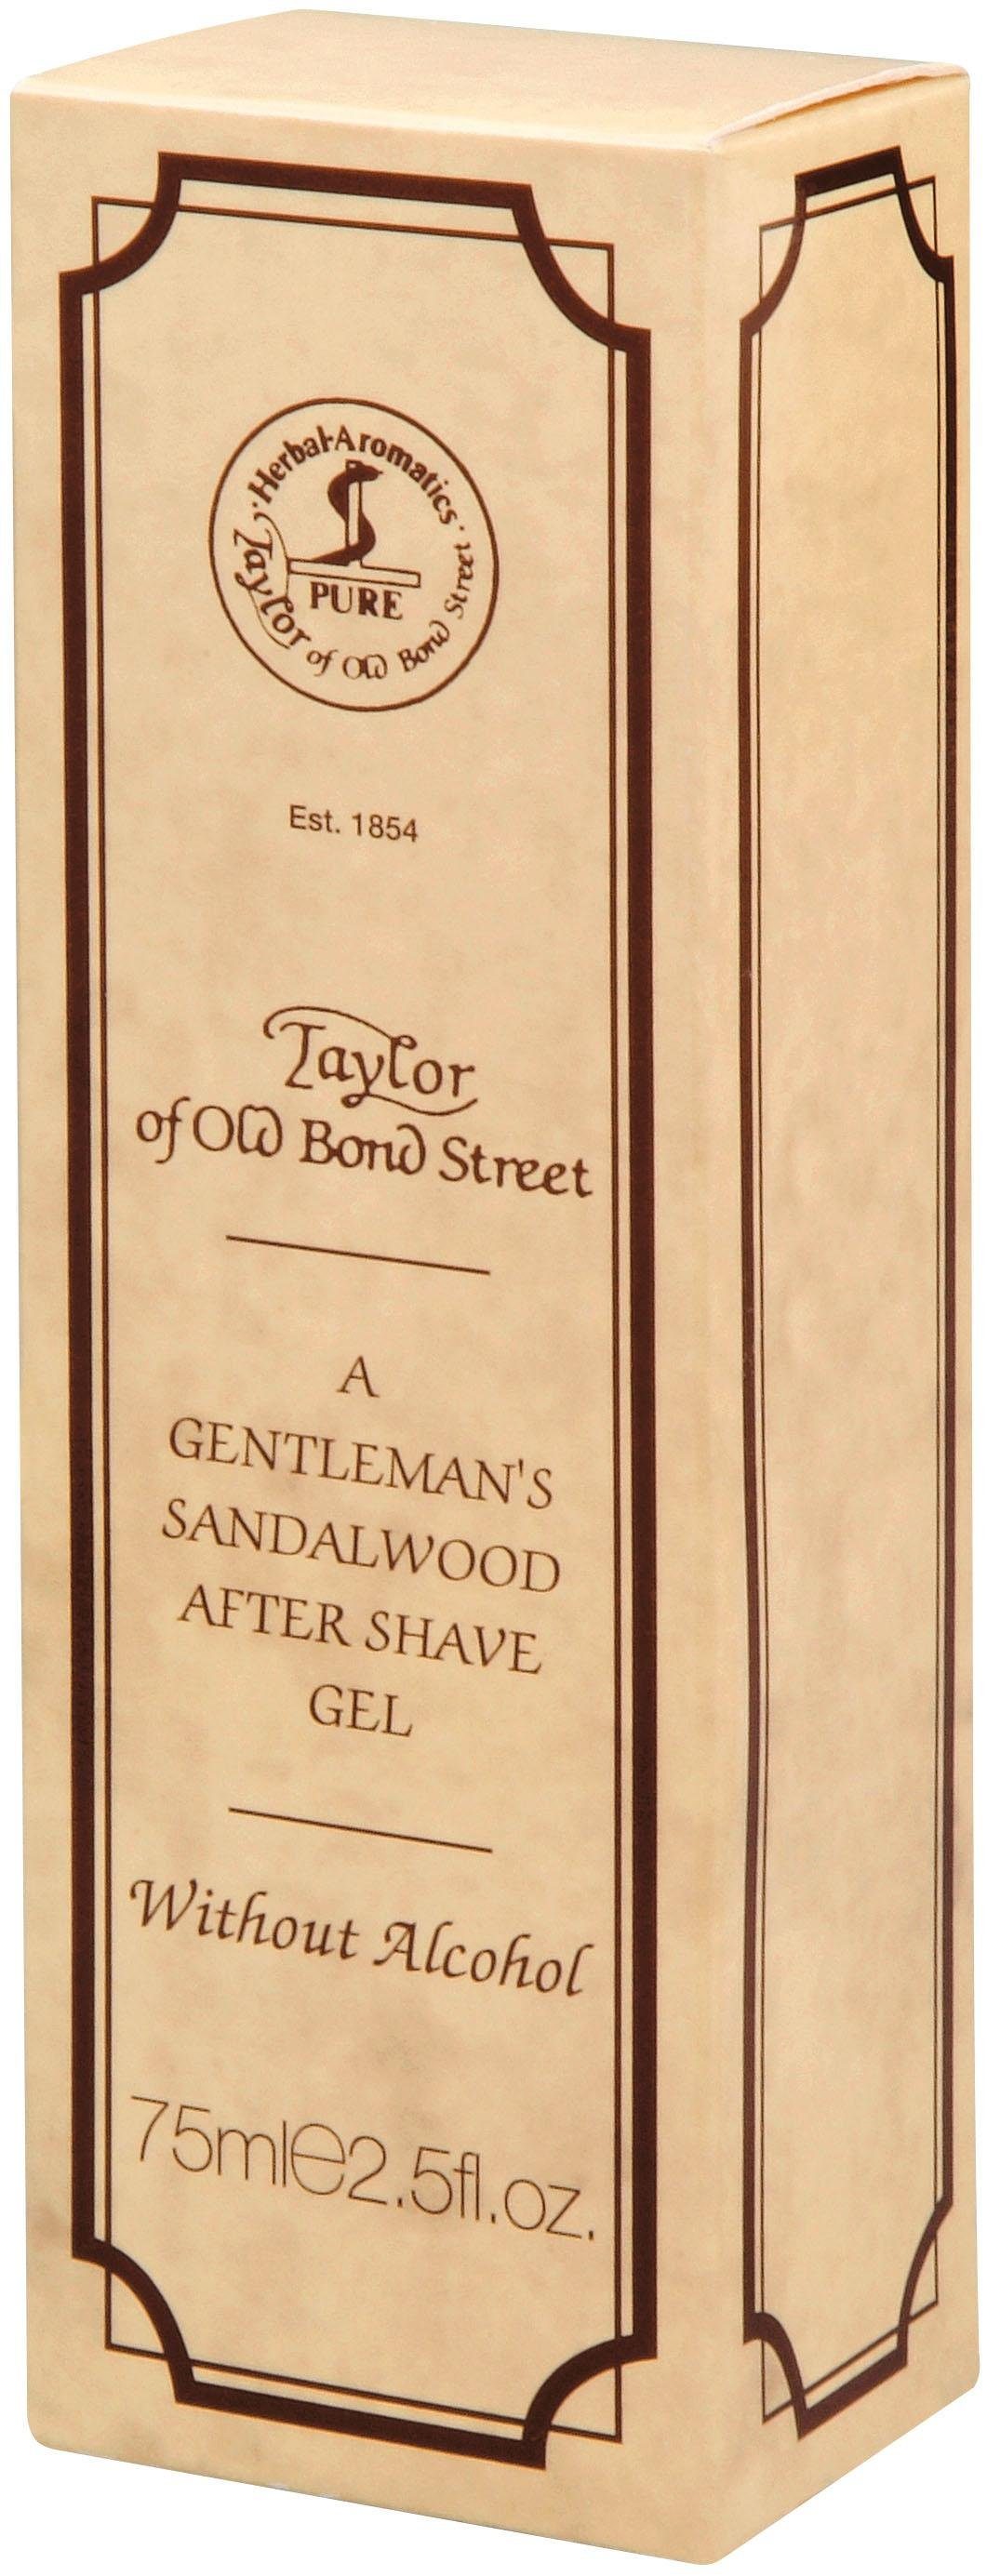 Taylor of mit Old Bond Ölen ätherischen After-Shave Street Sandalwood, Gel